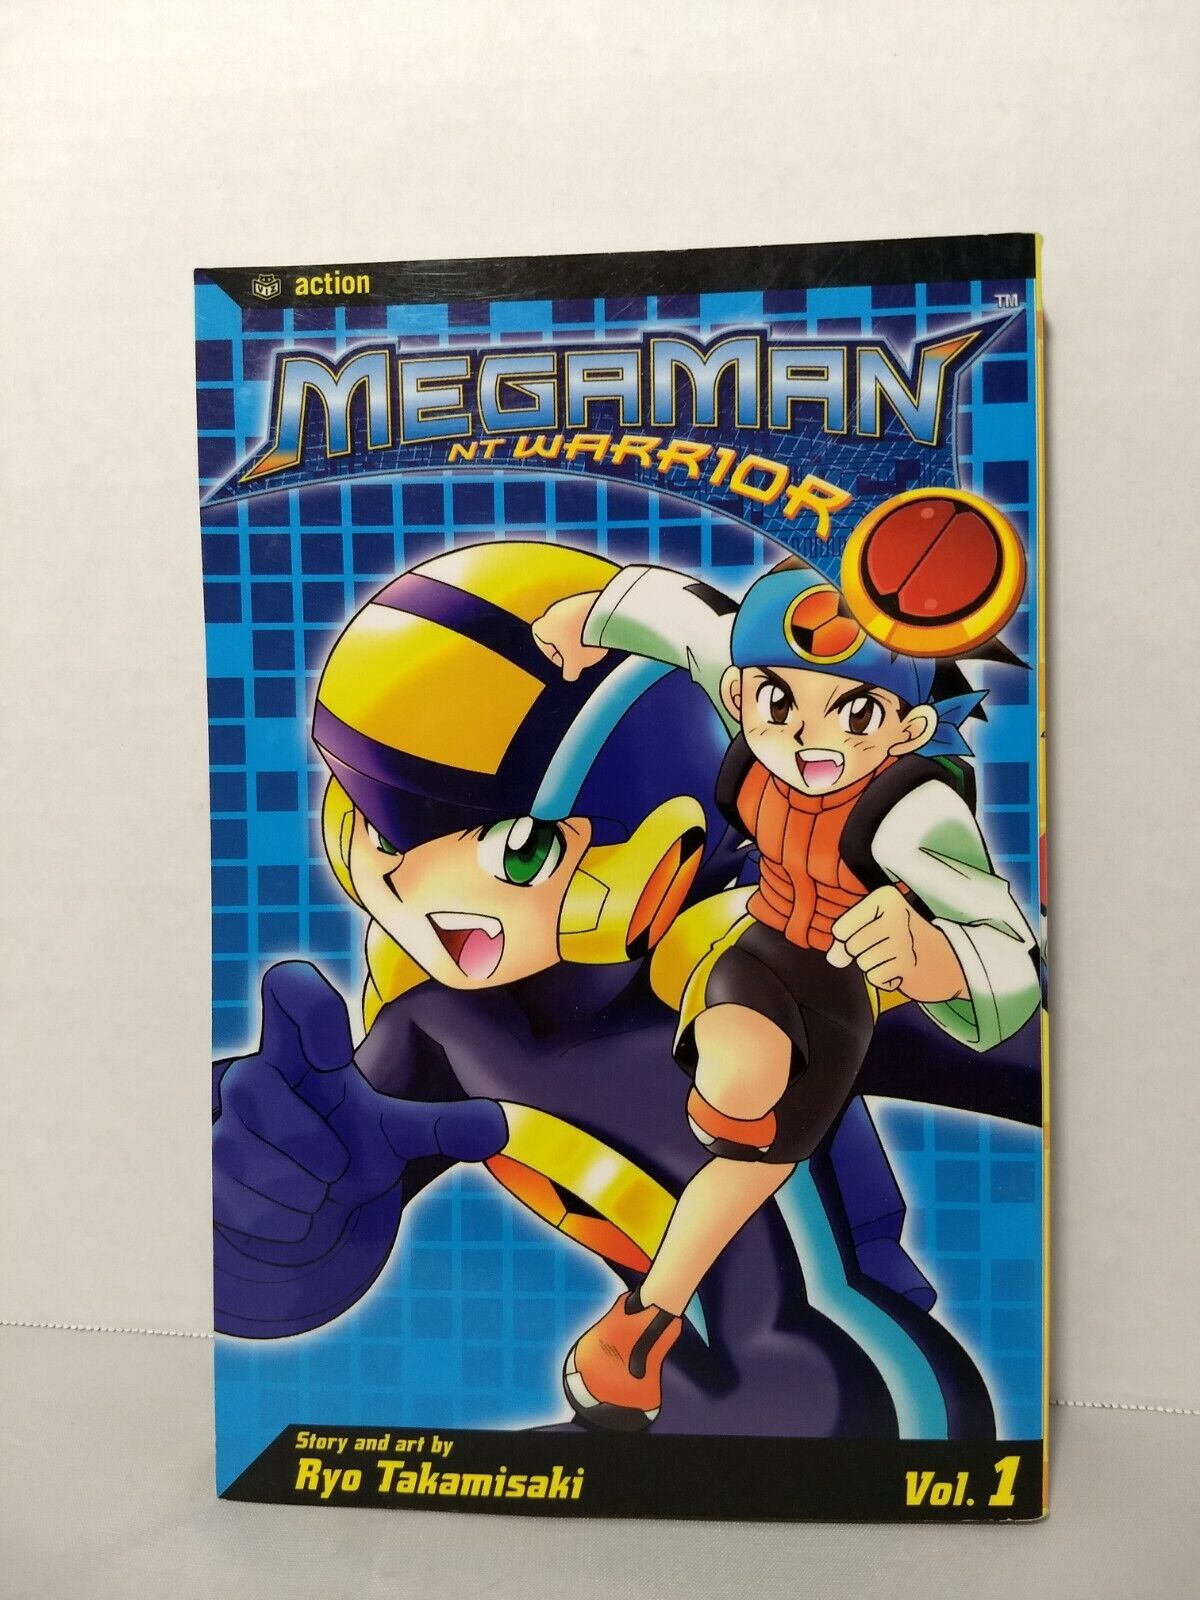 Megaman NT Warrior, Vol. 1 by Ryo Takamisaki (Viz Media, English Manga)